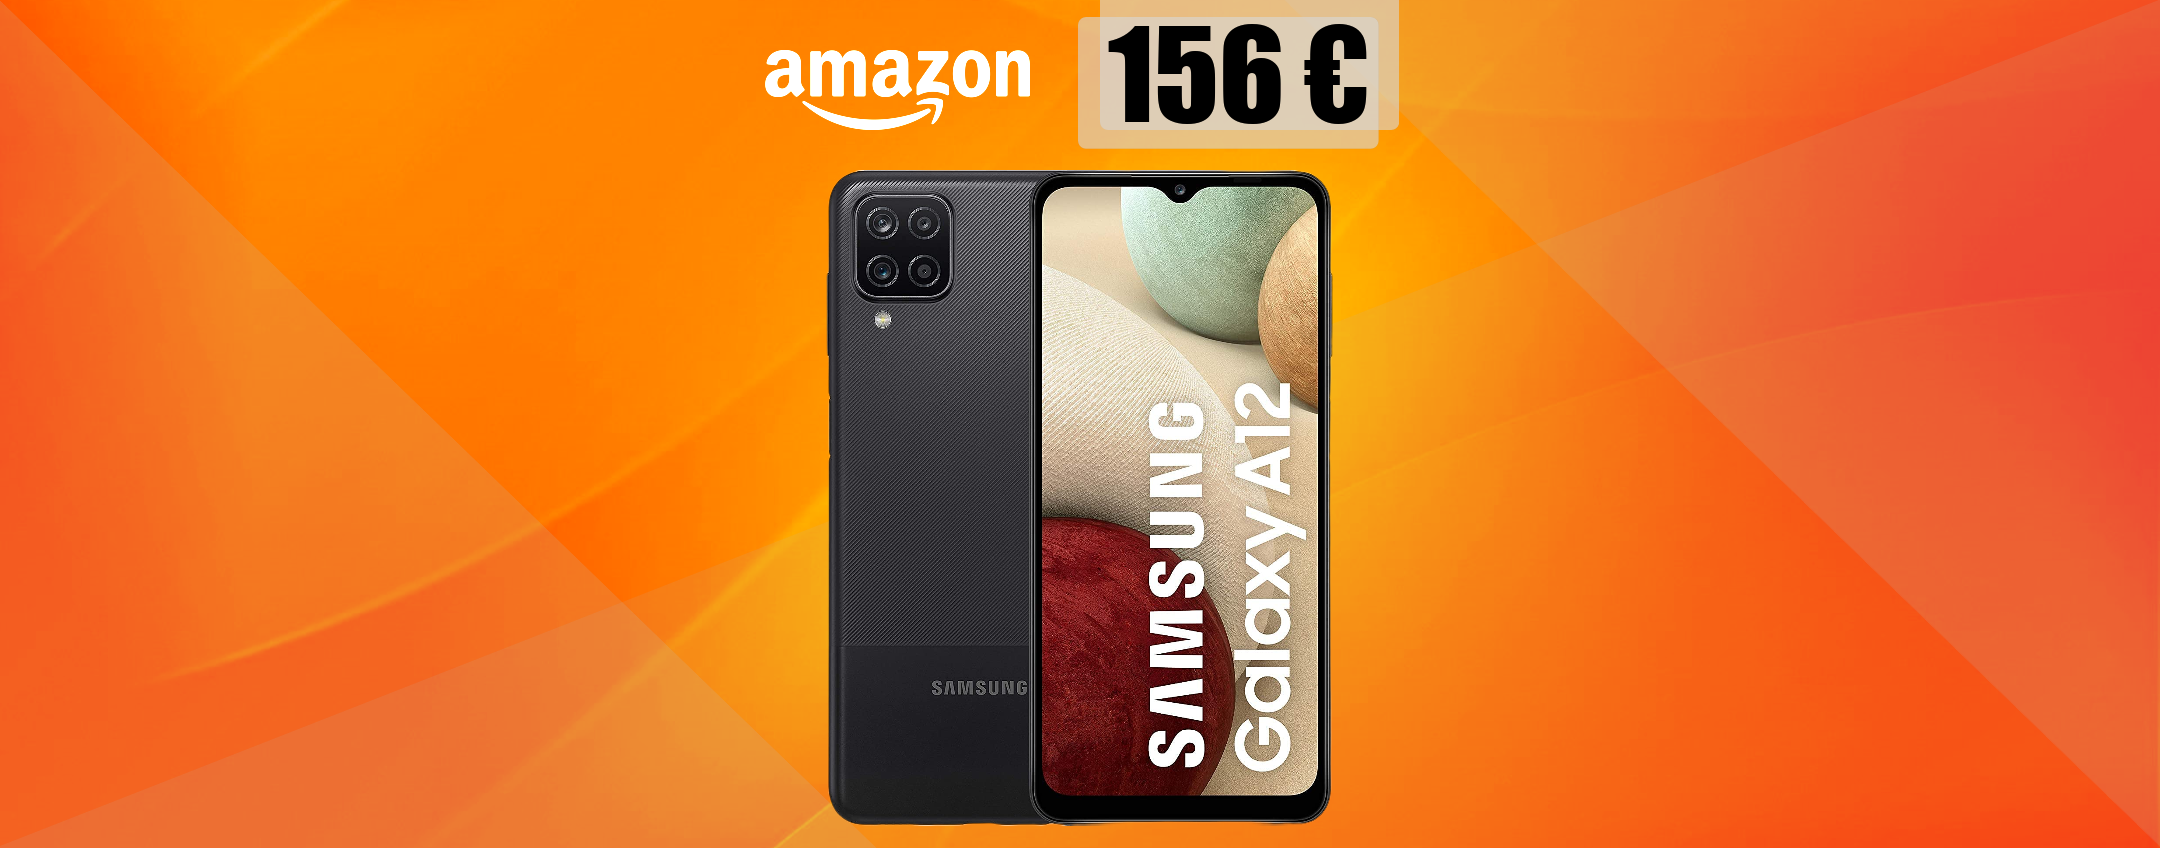 Samsung Galaxy A12, con MAXI batteria e 4 fotocamere, a soli 156€